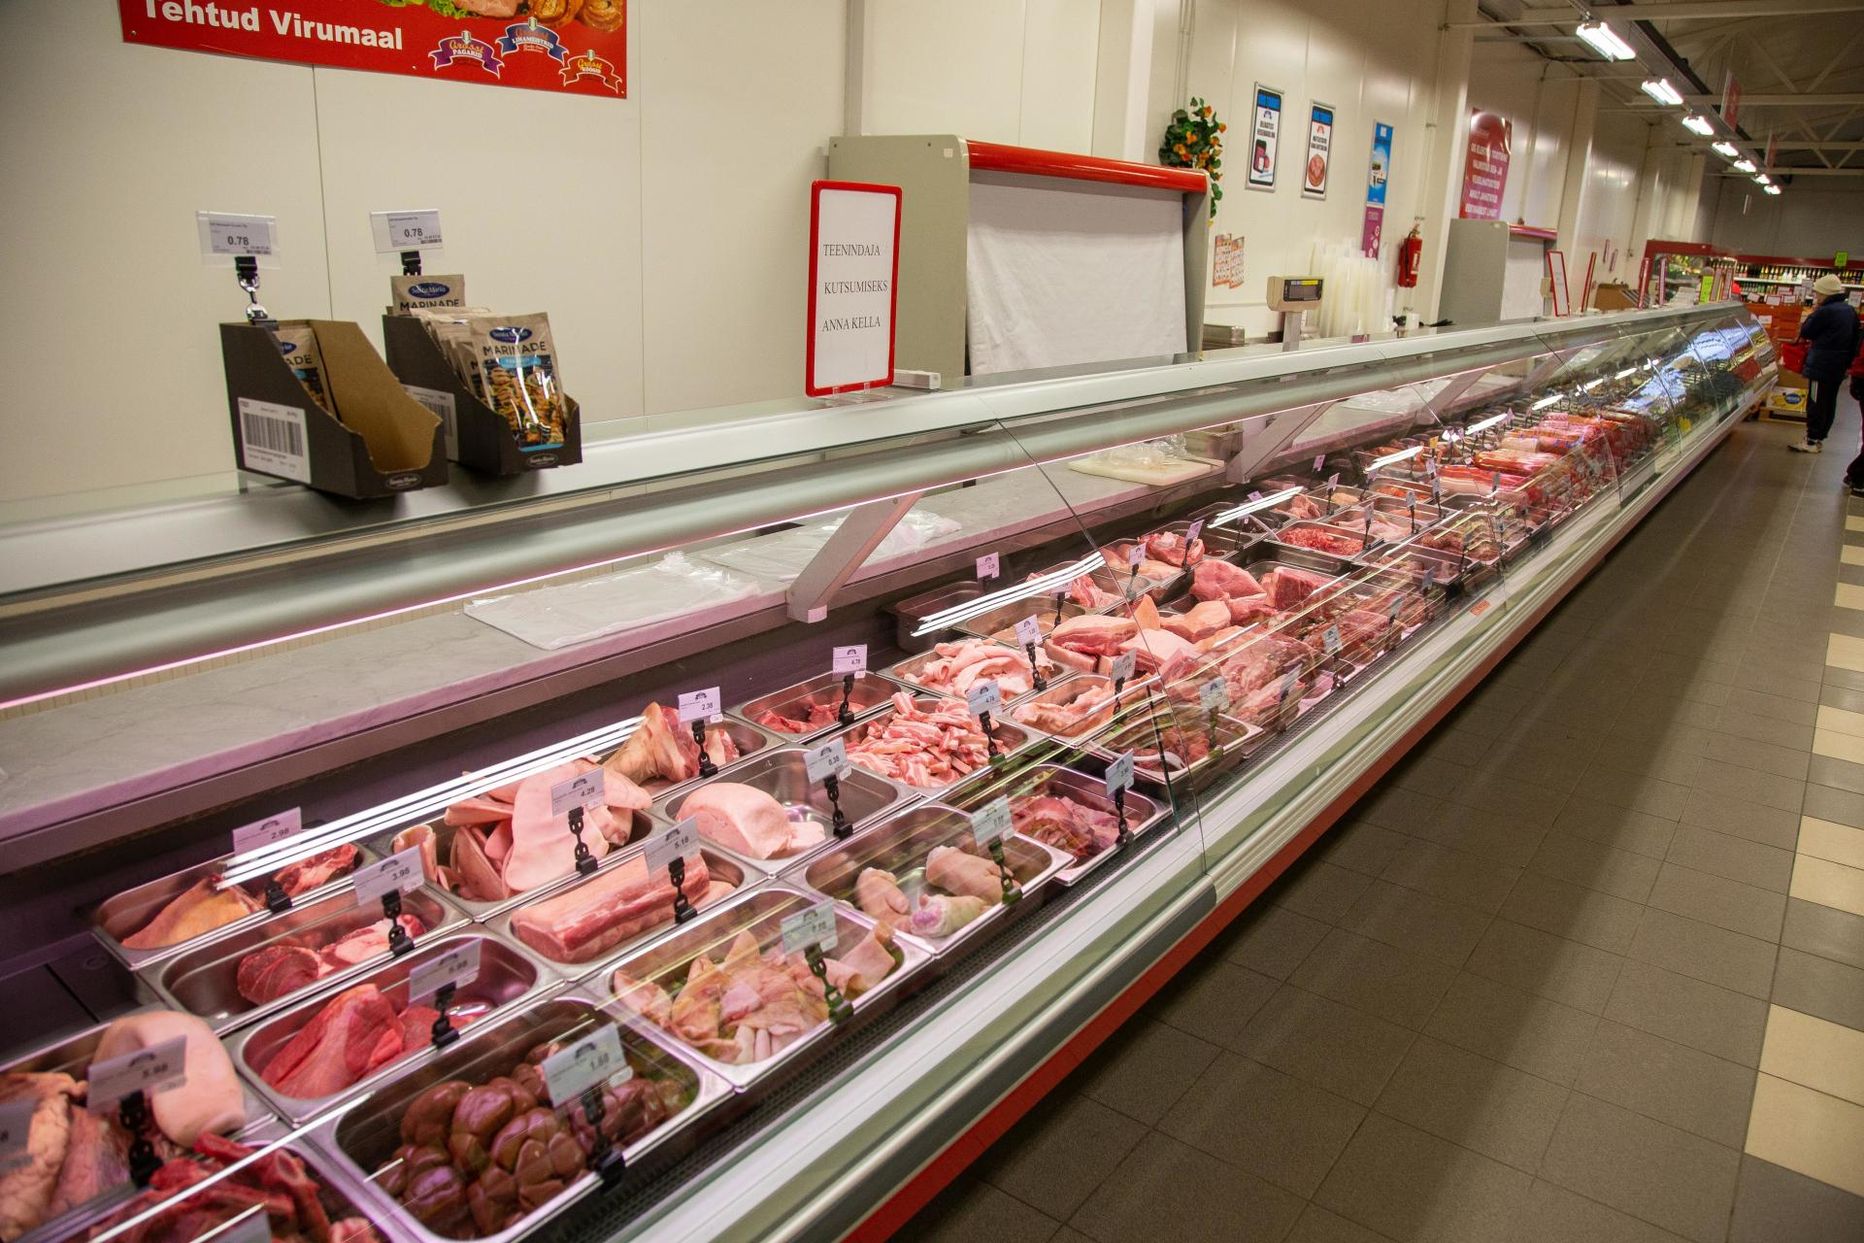 Liha hind on praegu häbematult madal ning see soodustab toiduraiskamist ja ületarbimist – kes aga teeb selle julge sammu ja kust saab alguse hinnatõus? 